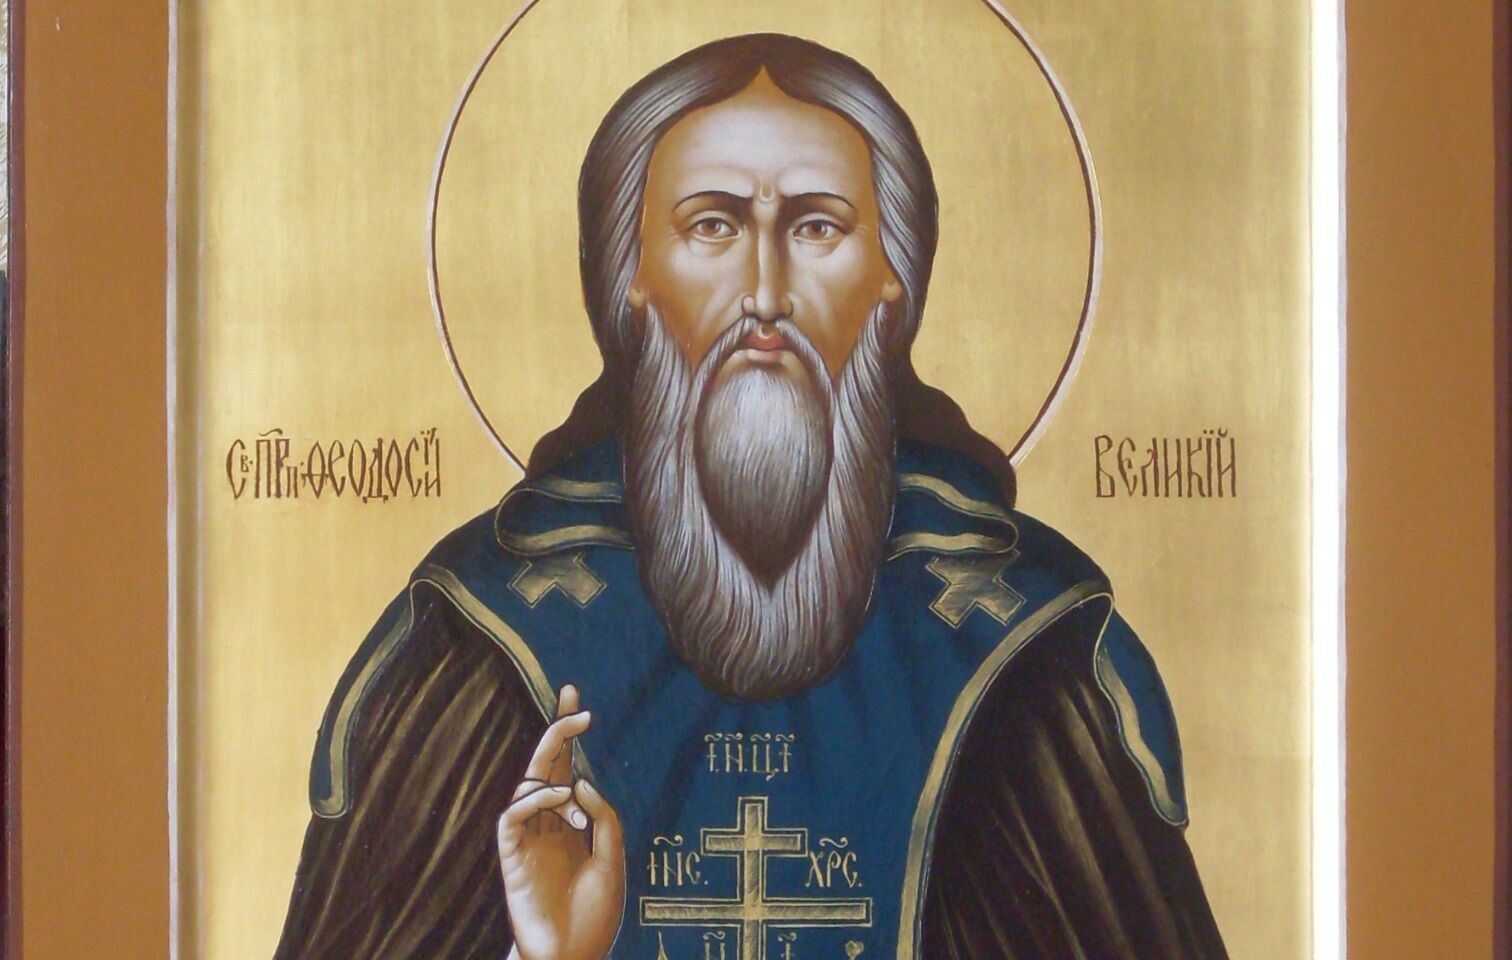 Ім'я Феодосія в православ'ї співвідносять з преподобними Феодосієм Кіновіархом і мучеником Феодосієм Сірмірским.